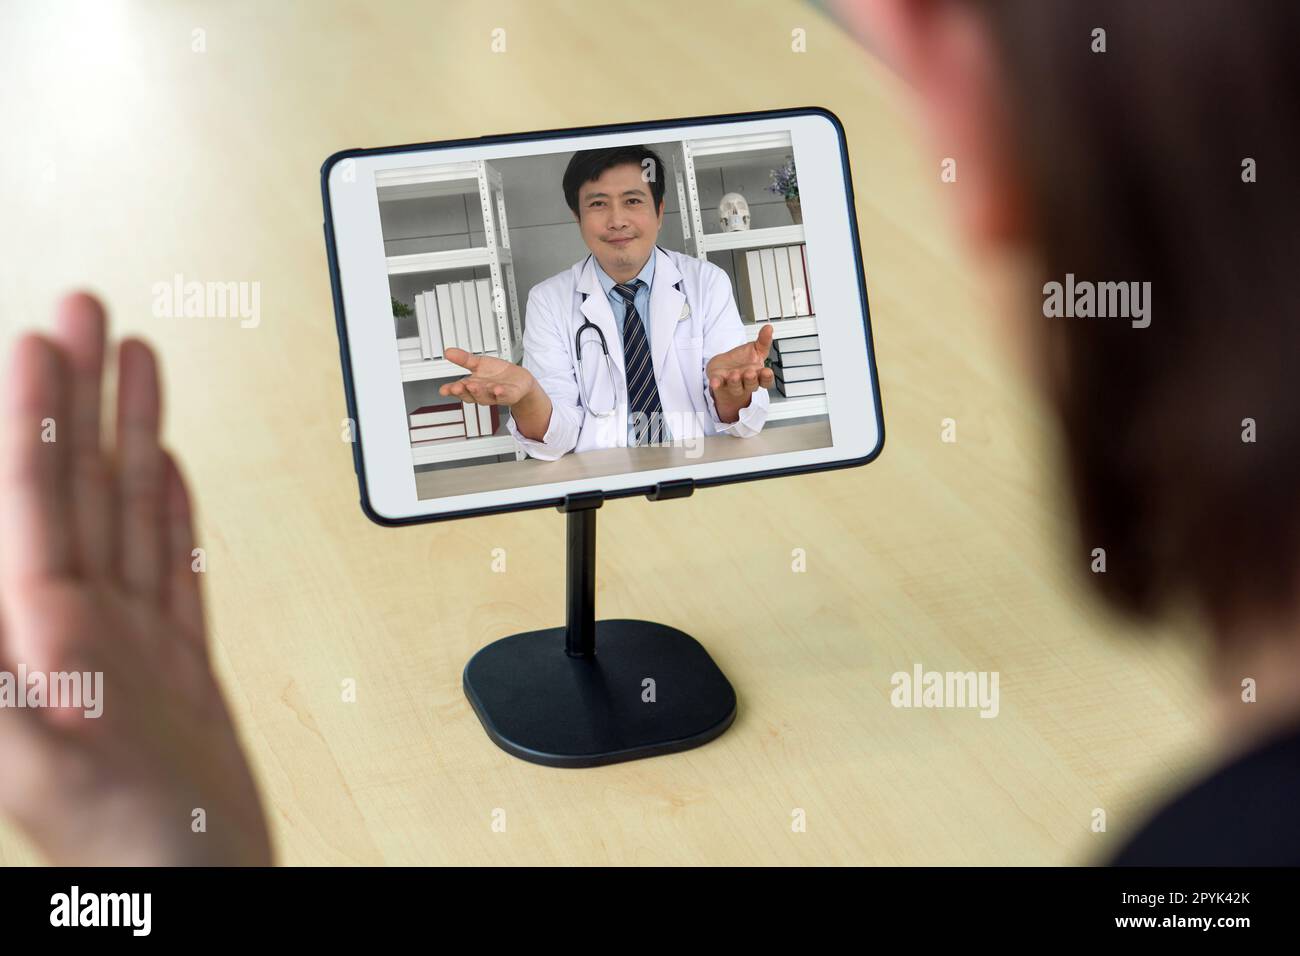 Webcam uomo immagini e fotografie stock ad alta risoluzione - Alamy